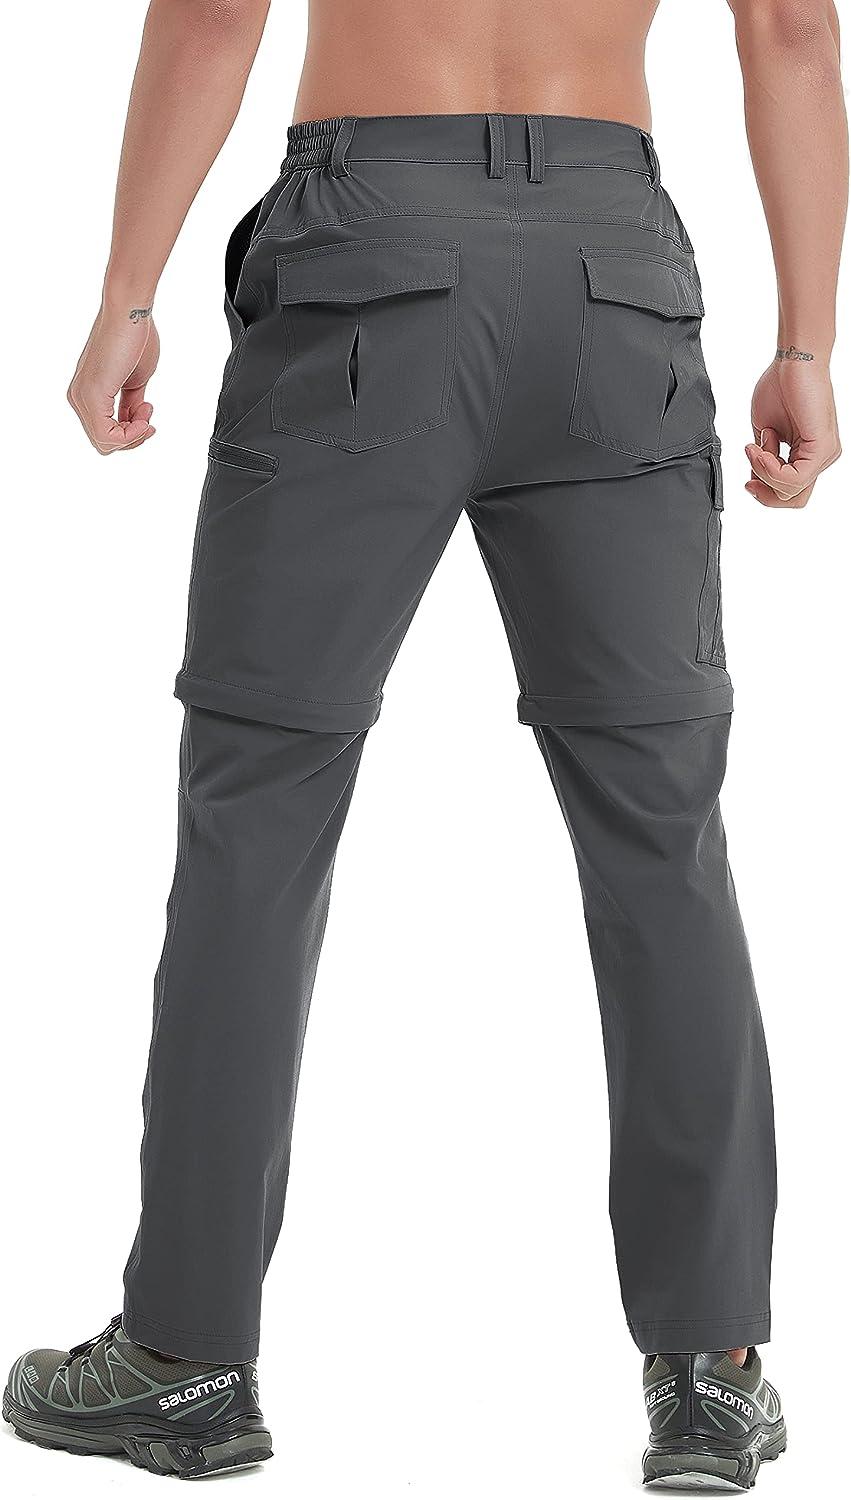 Mens Hiking Convertible Pants Waterproof Lightweight Quick Dry Zip